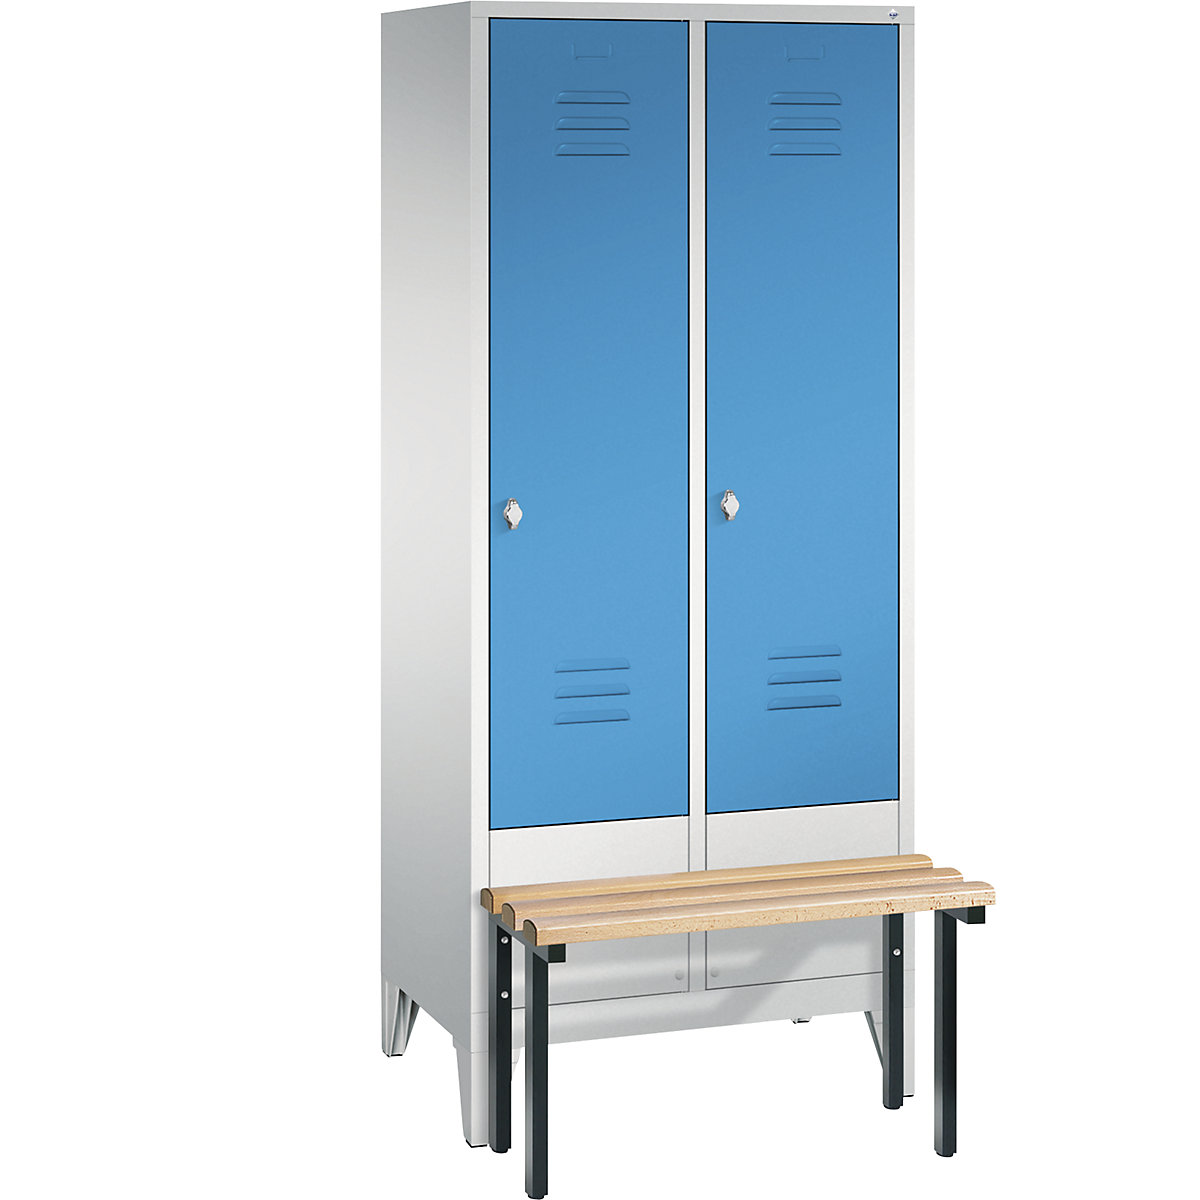 Garderobekast CLASSIC met aangebouwde zitbank – C+P, 2 afdelingen, afdelingsbreedte 400 mm, lichtgrijs/lichtblauw-7